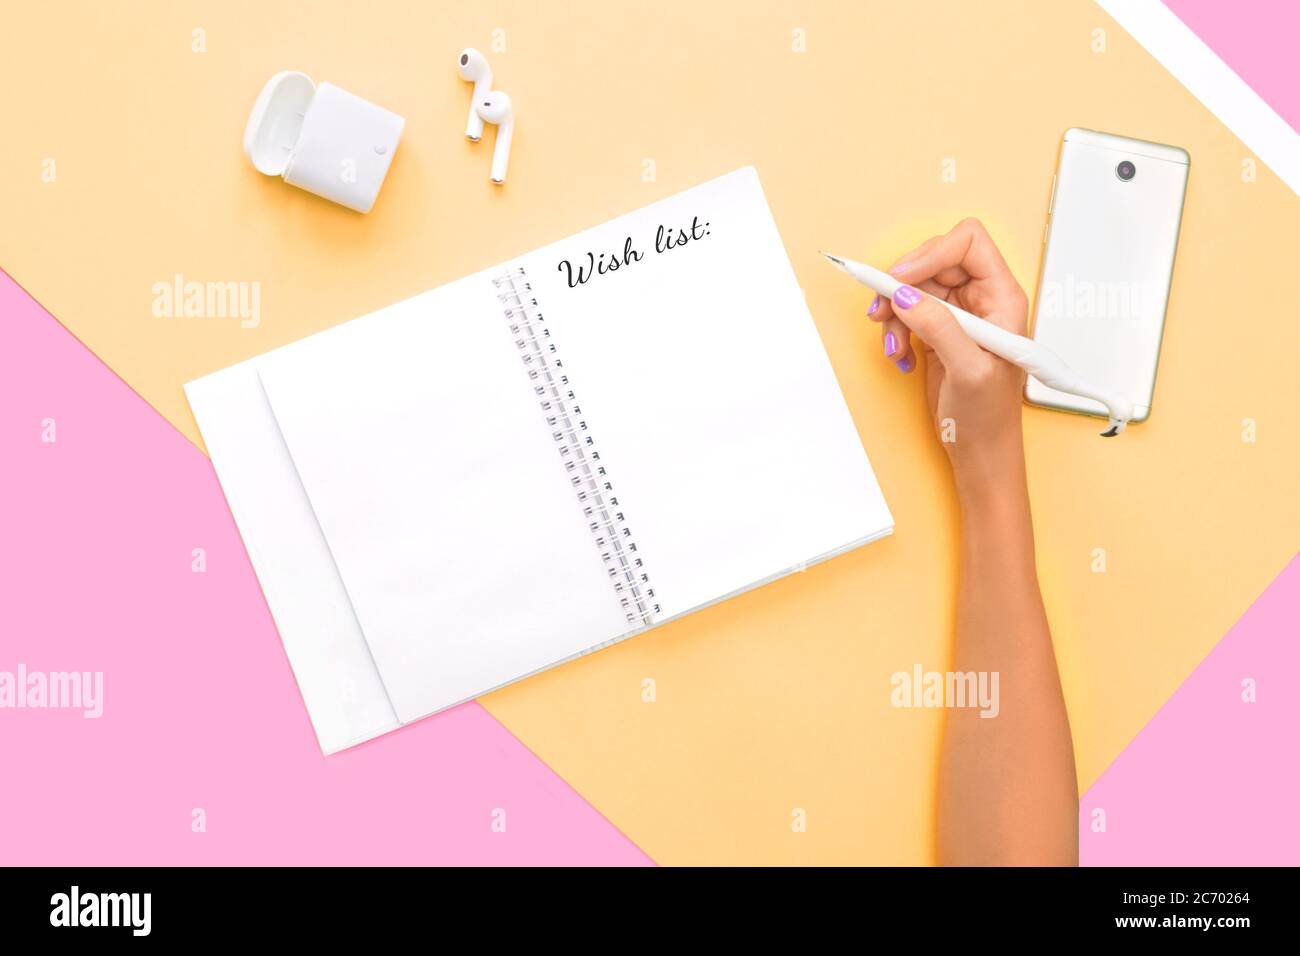 Scritta wishlist in nota, concetto blogger. Vista dall'alto di cuffie, telefono e notebook con mano e una perfetta manicure luminosa sullo sfondo rosa arancione Foto Stock